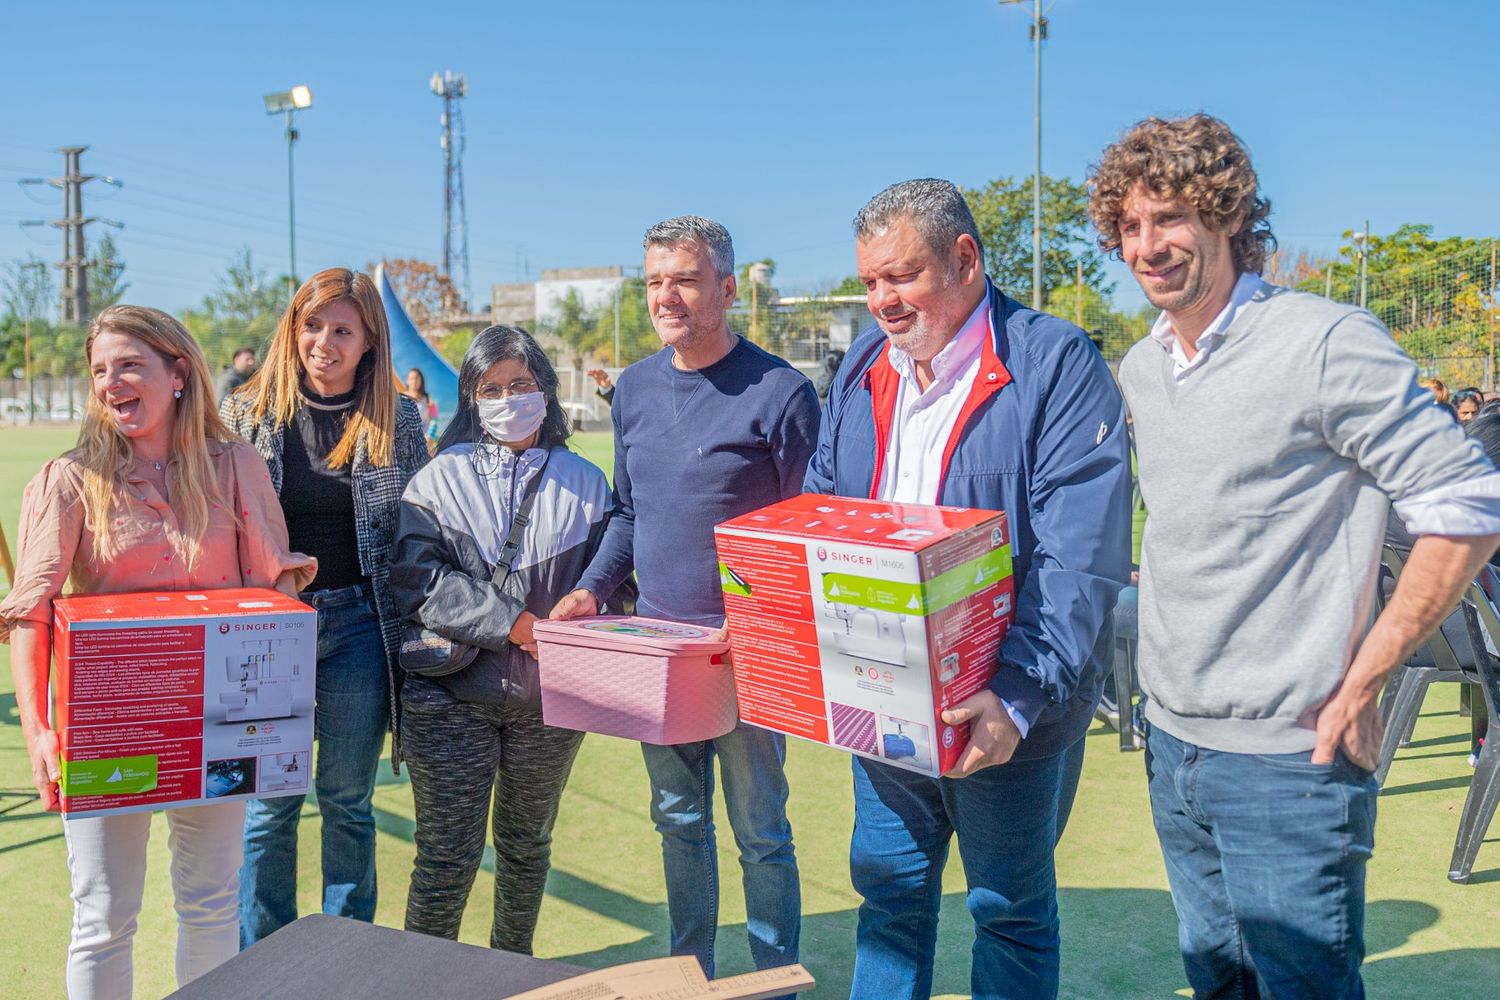 San Fernando: Andreotti y Zabaleta entregaron 60 kits de costura a emprendedores